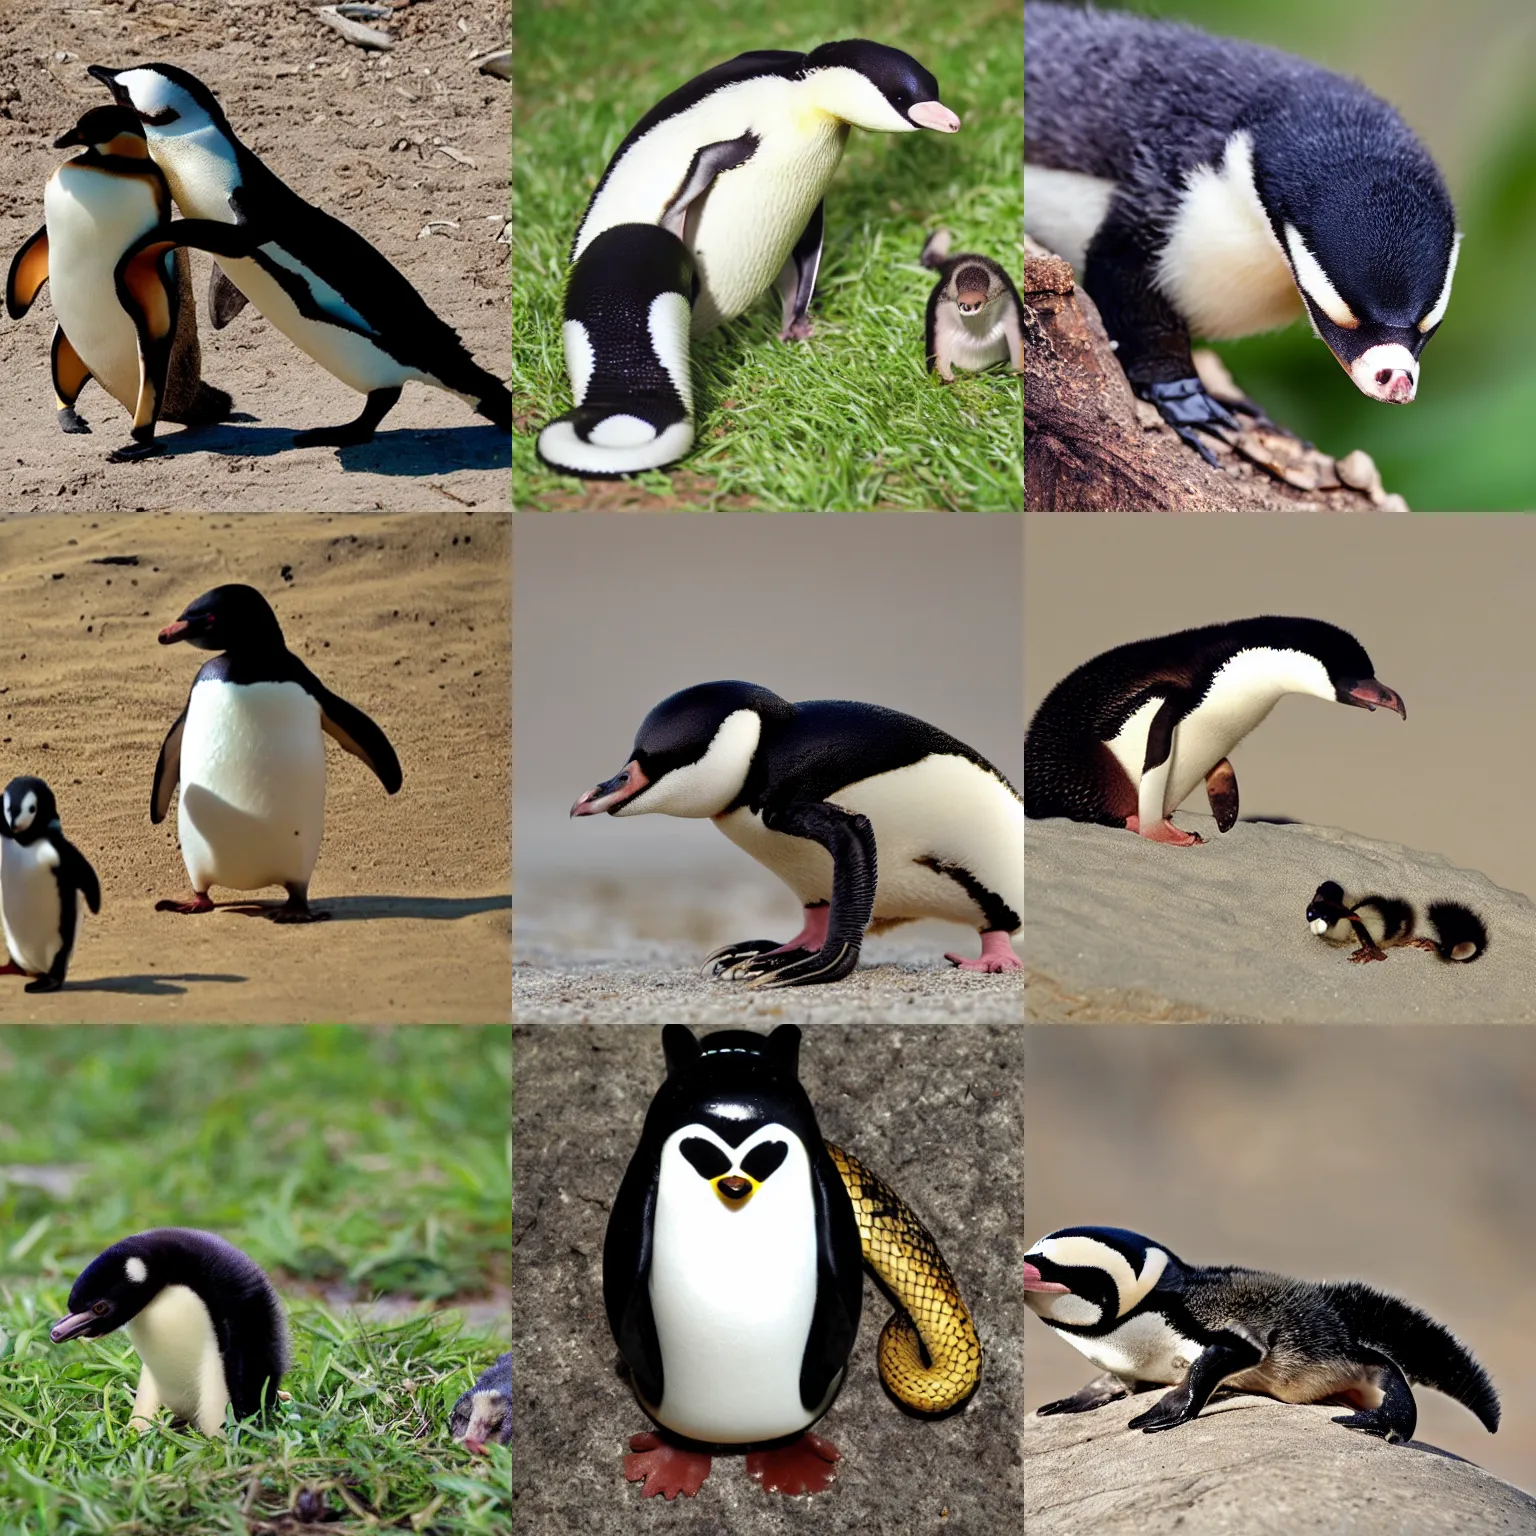 Prompt: honey badger, penguin, small snake